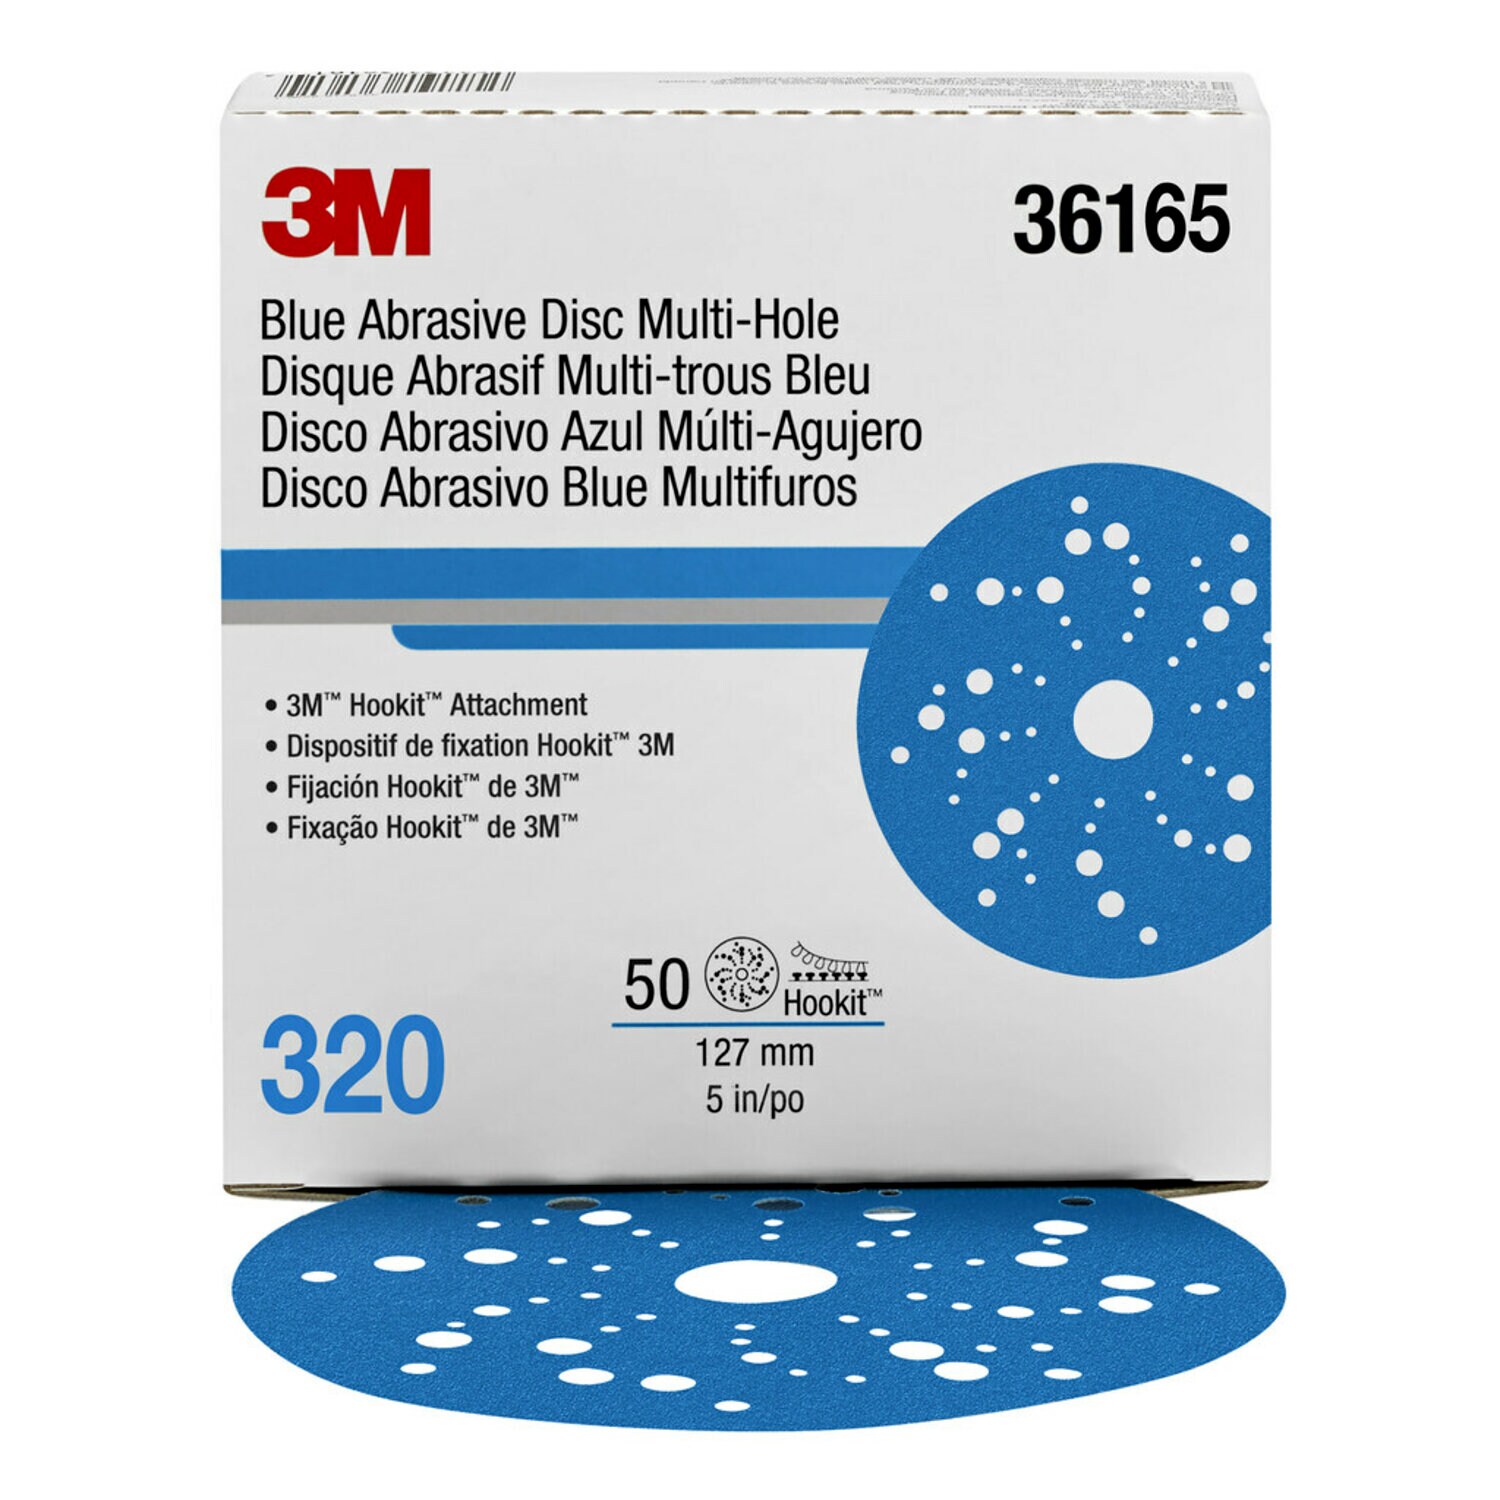 7100215945 - 3M Hookit Blue Abrasive Disc 321U, 36165, 5 in, 320 grade, Multi-hole, 50 discs per carton, 4 cartons per case